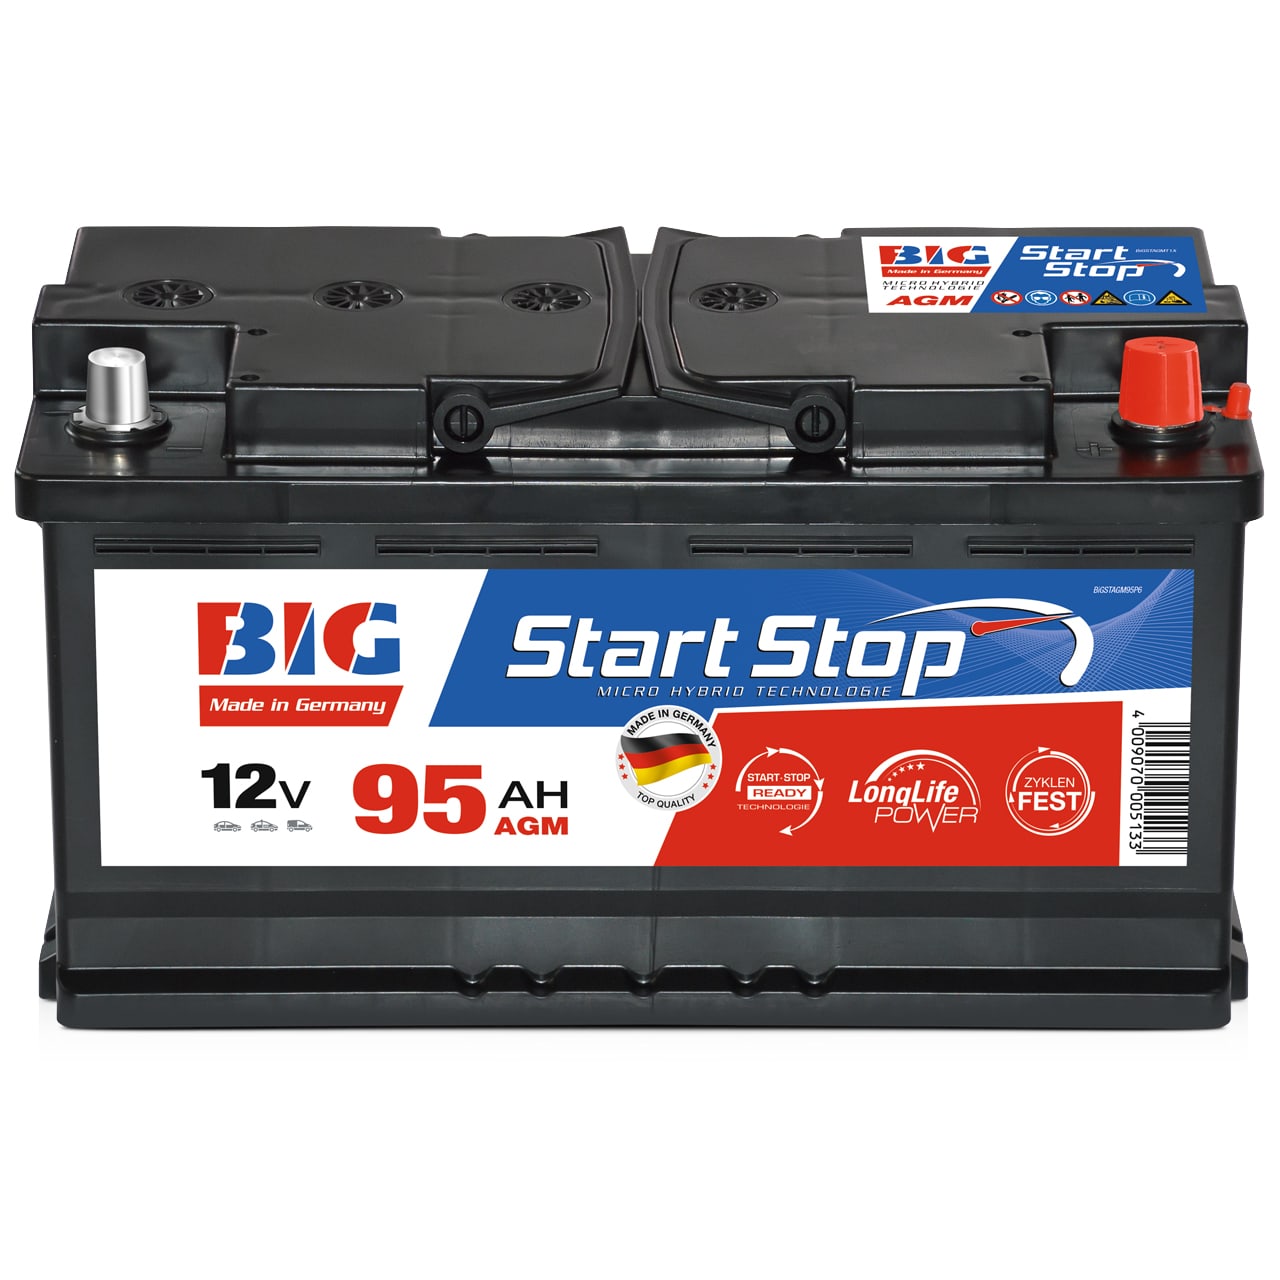 SIGA TRUCK STAR LKW Batterie 125Ah 12V, 133,90 €